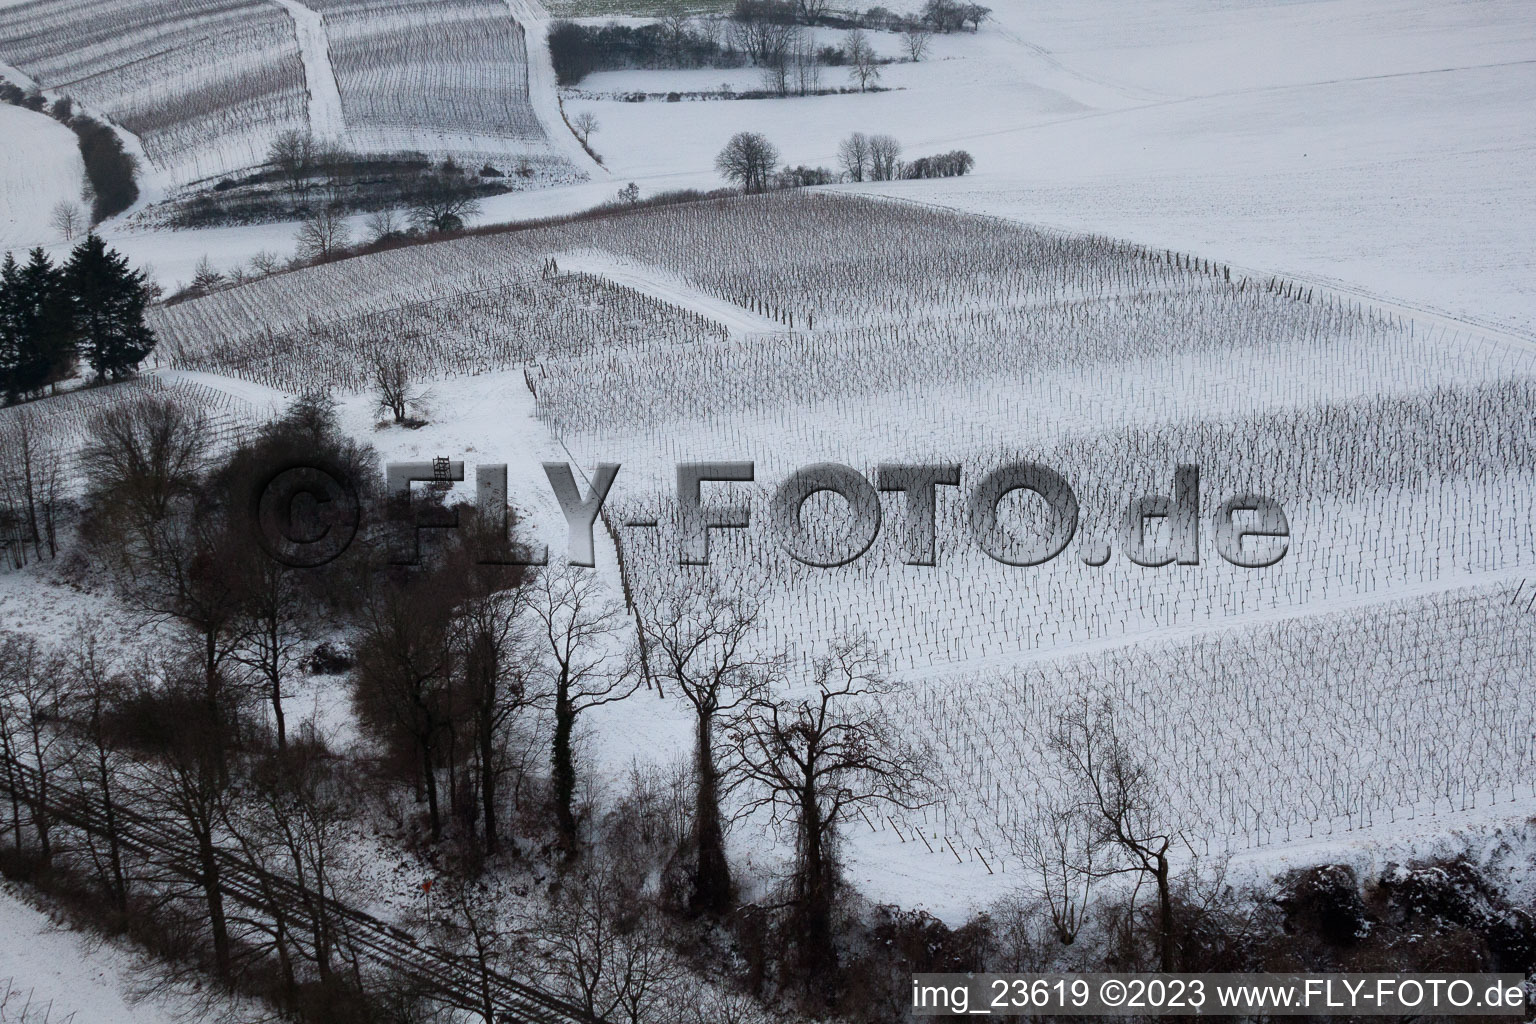 Photographie aérienne de Ailier d'hiver à Freckenfeld dans le département Rhénanie-Palatinat, Allemagne